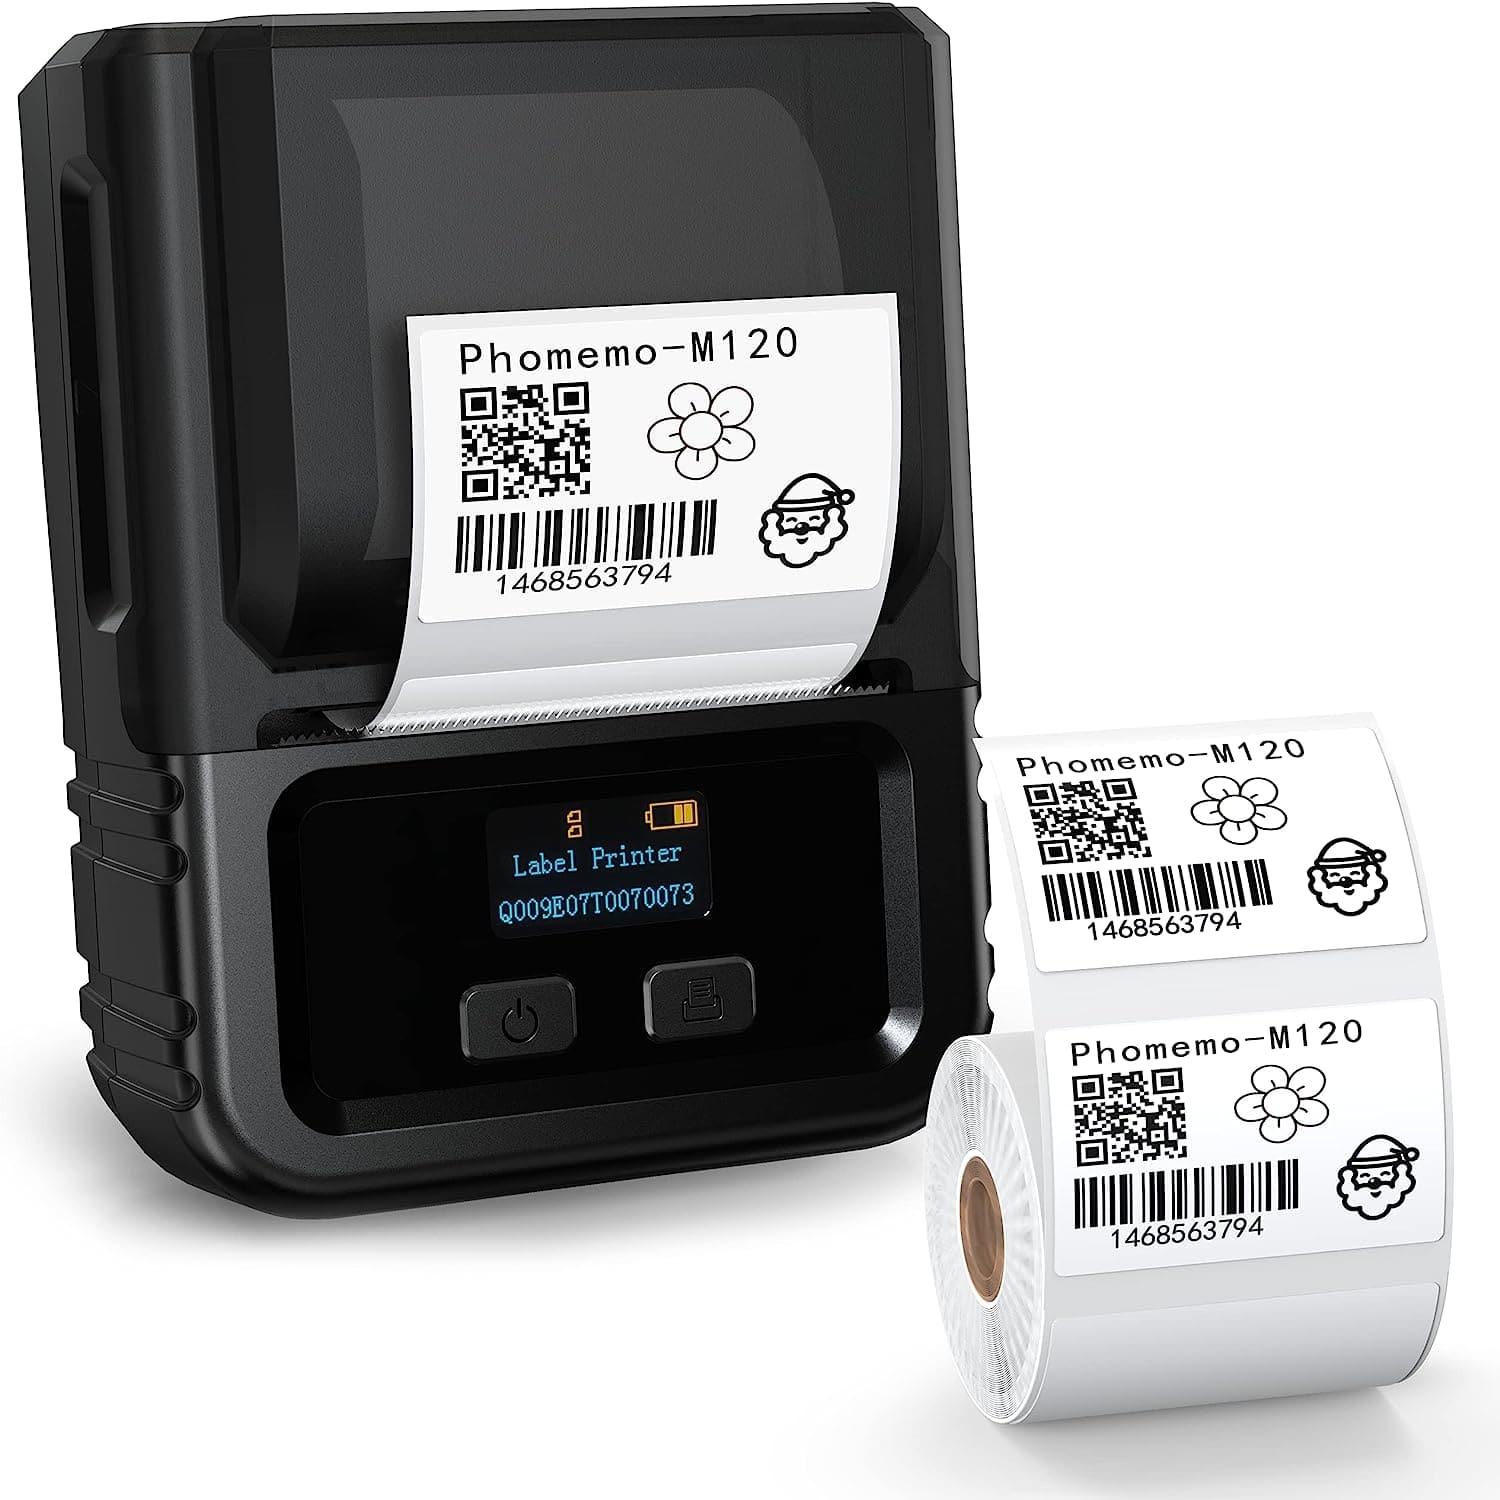 Impressora de etiquetas Phomemo M120 fabricante de etiquetas Bluetooth